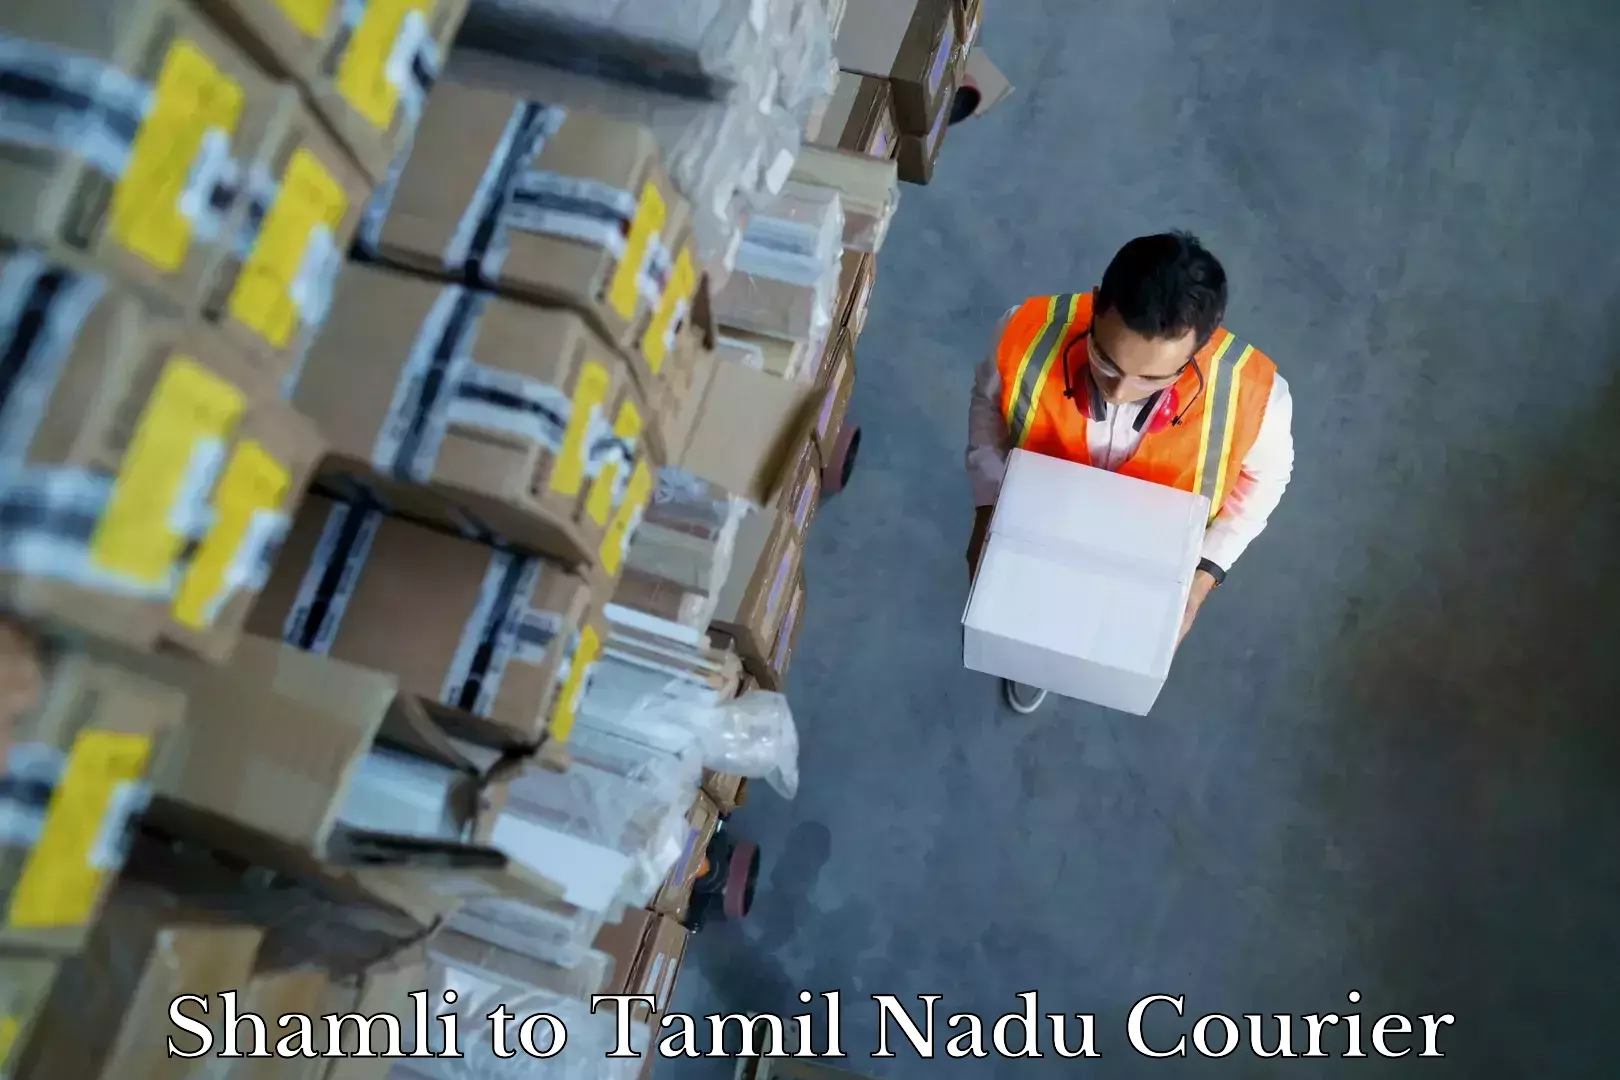 Furniture transport professionals Shamli to Tamil Nadu